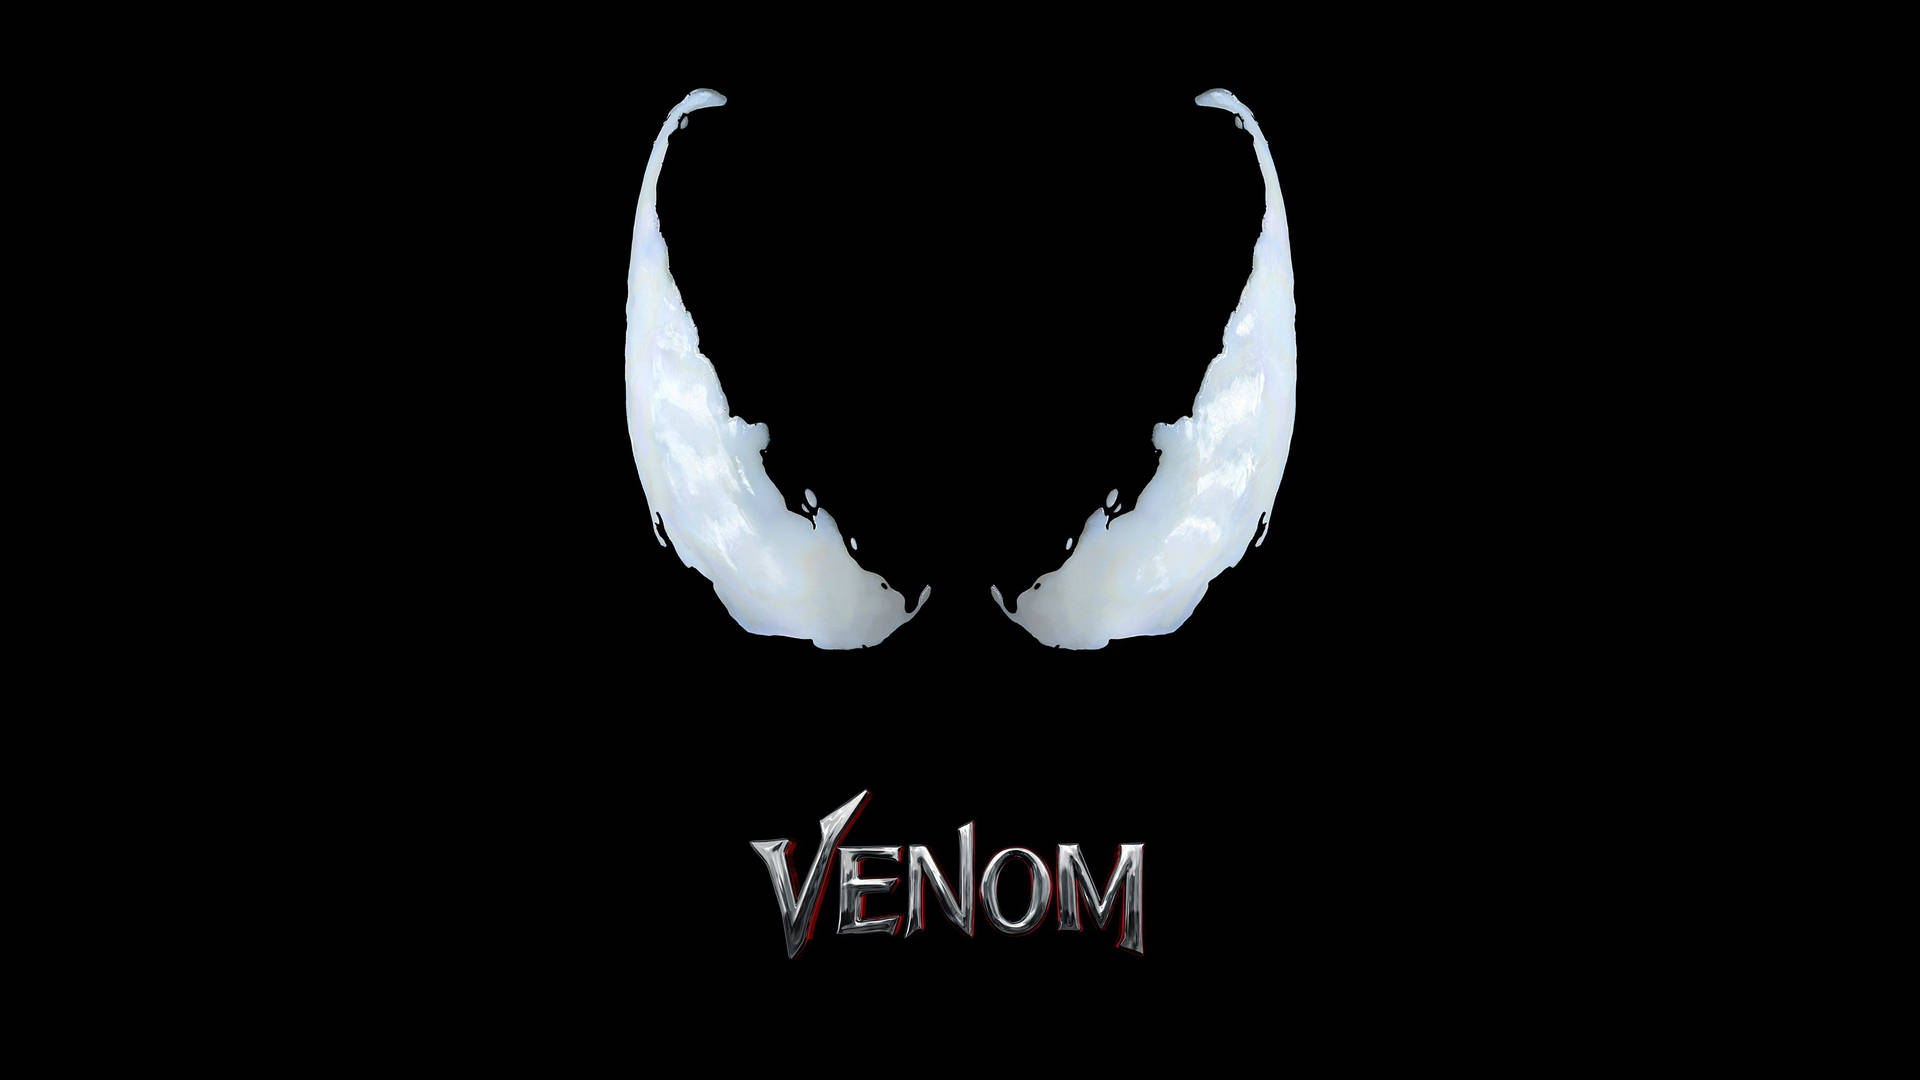 Venom From Marvel Eyes Wallpaper